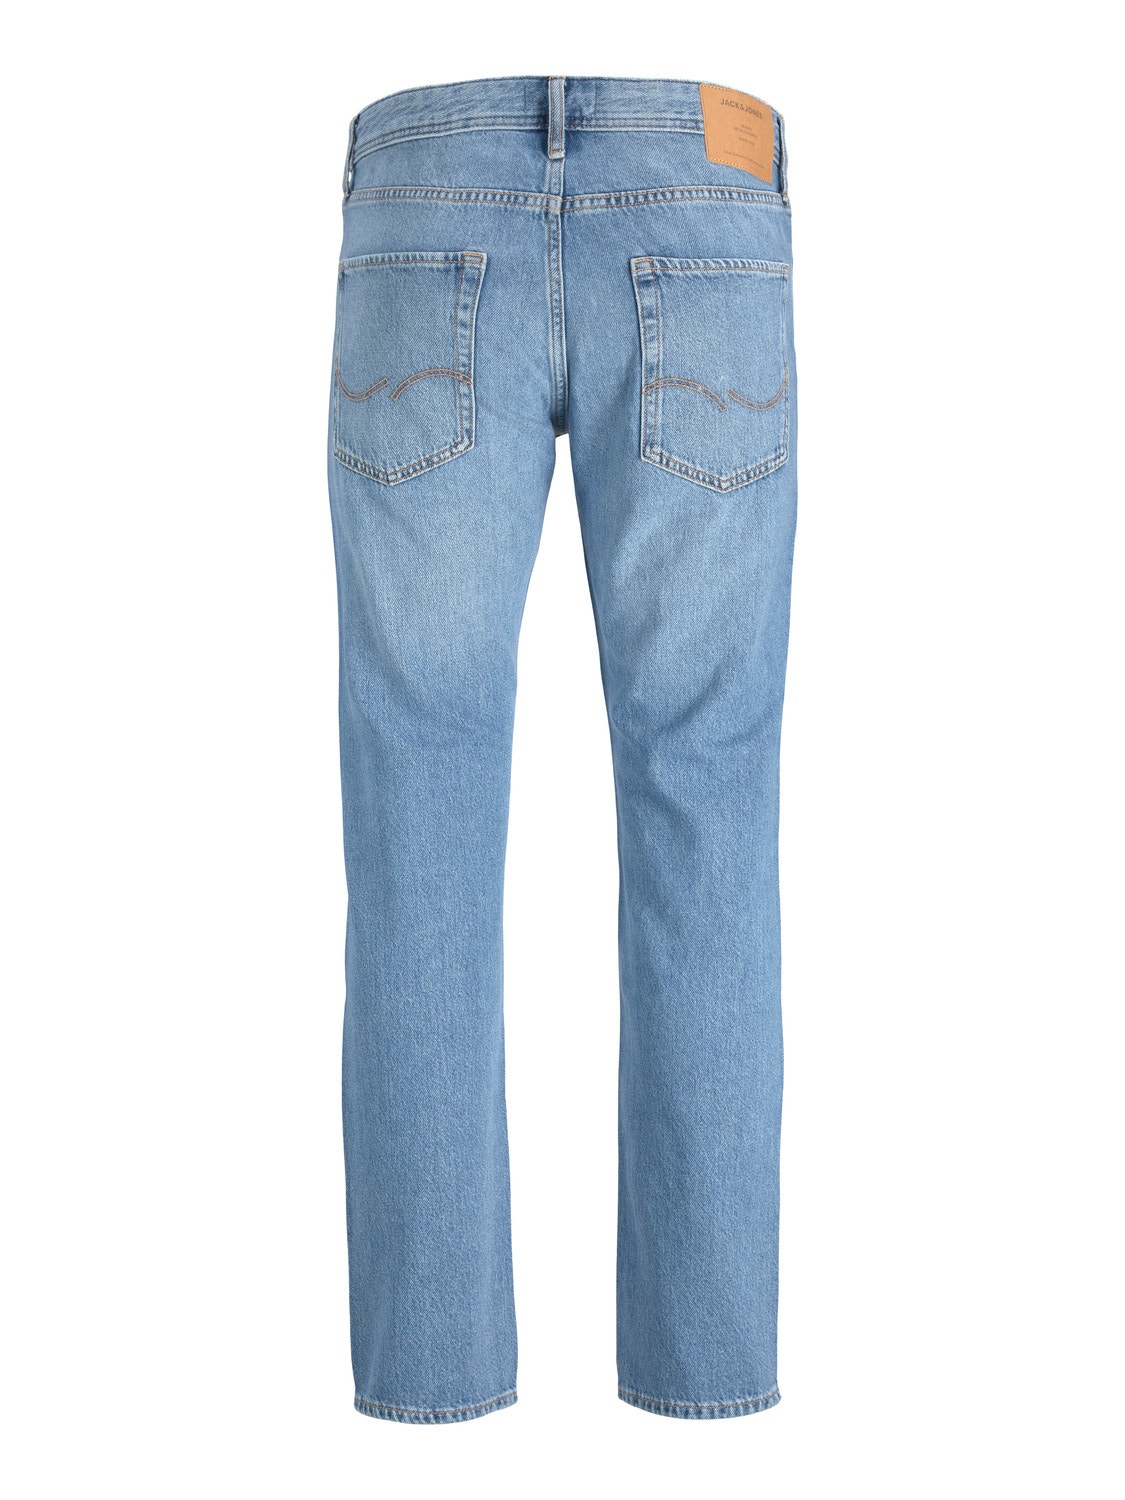 Jack & Jones JJIMIKE JJORIGINAL MF 156 Jeans Tapered Fit -Blue Denim - 12223593